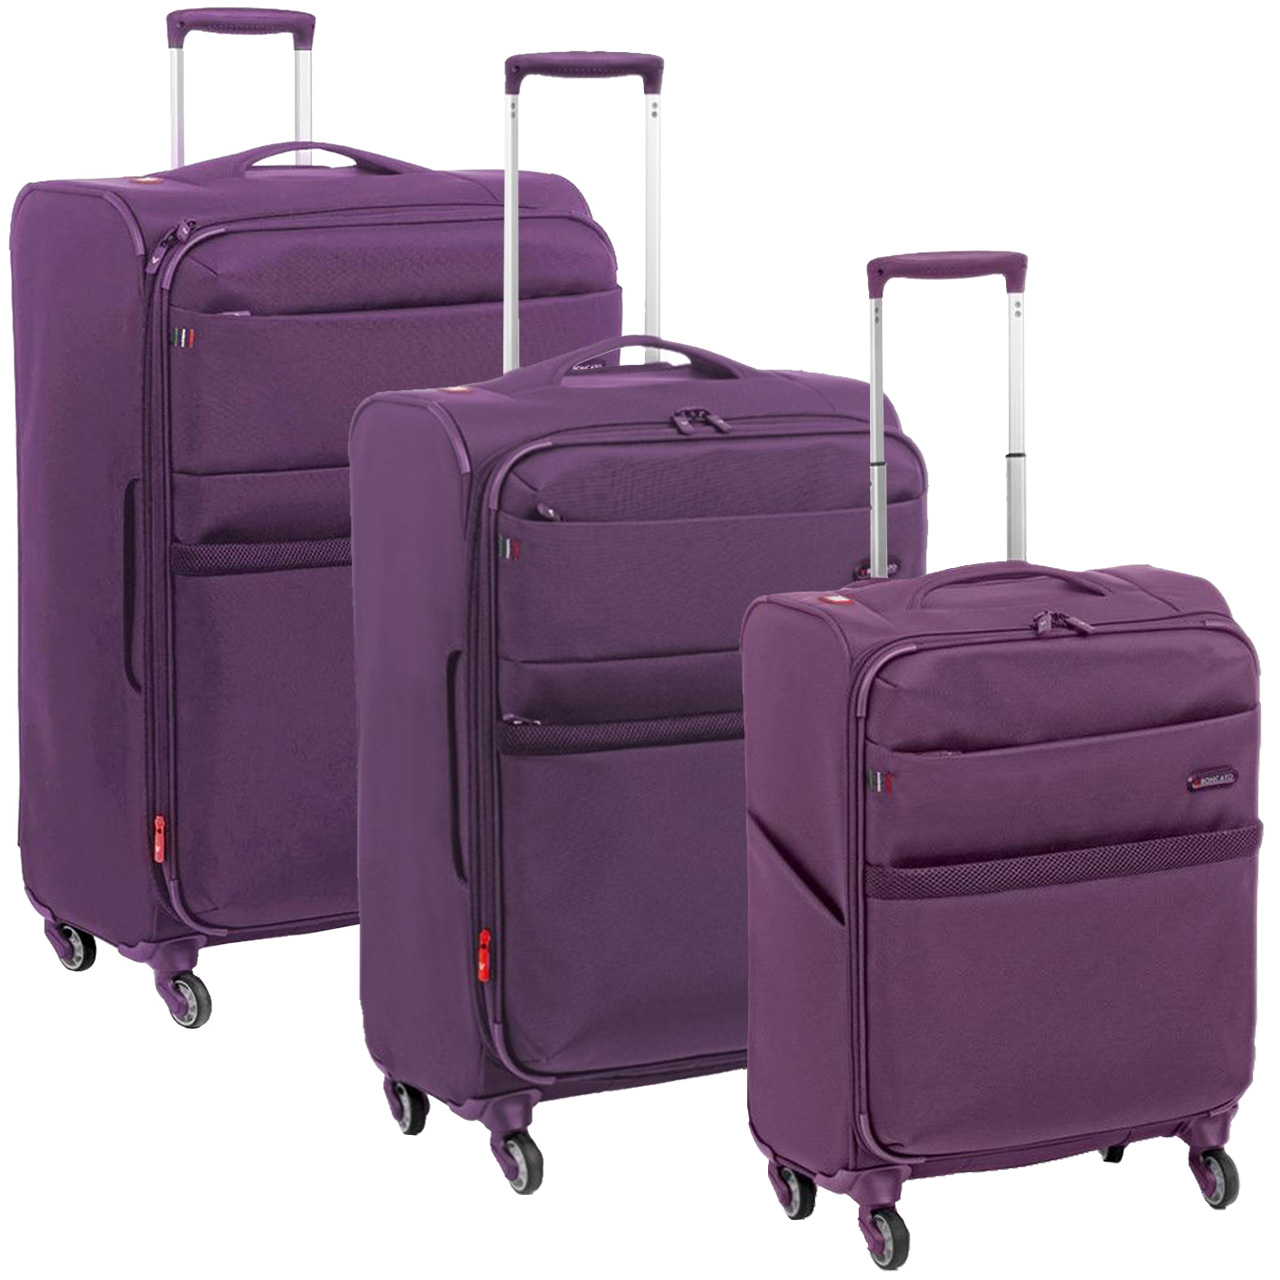 مجموعه سه عددی چمدان رونکاتو مدل VENICE